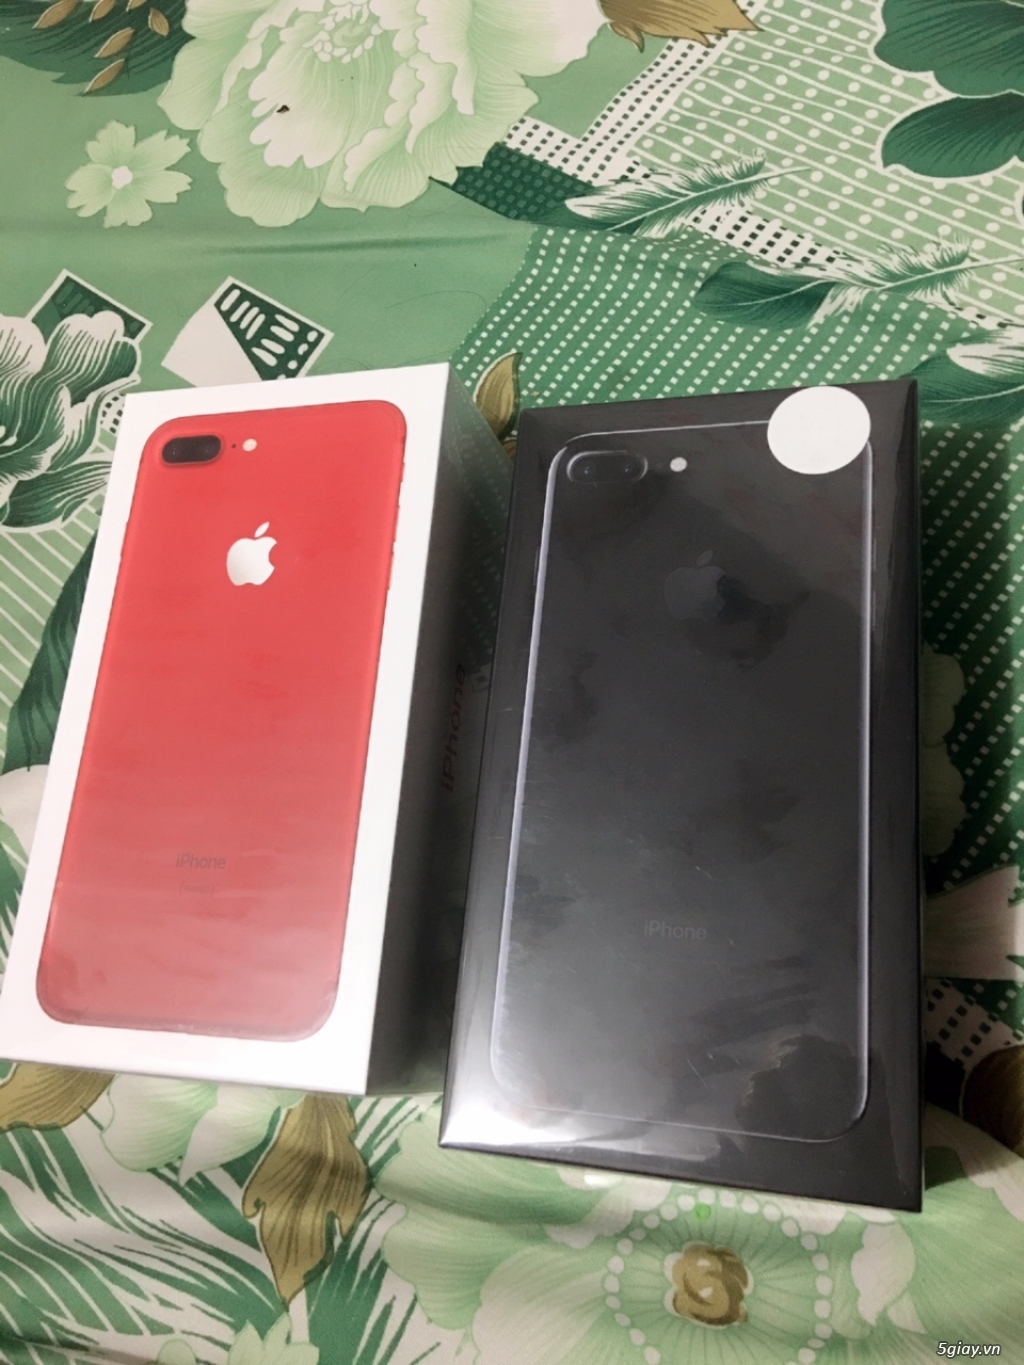 Iphone 7 plus đỏ 128gb và đen 256gb